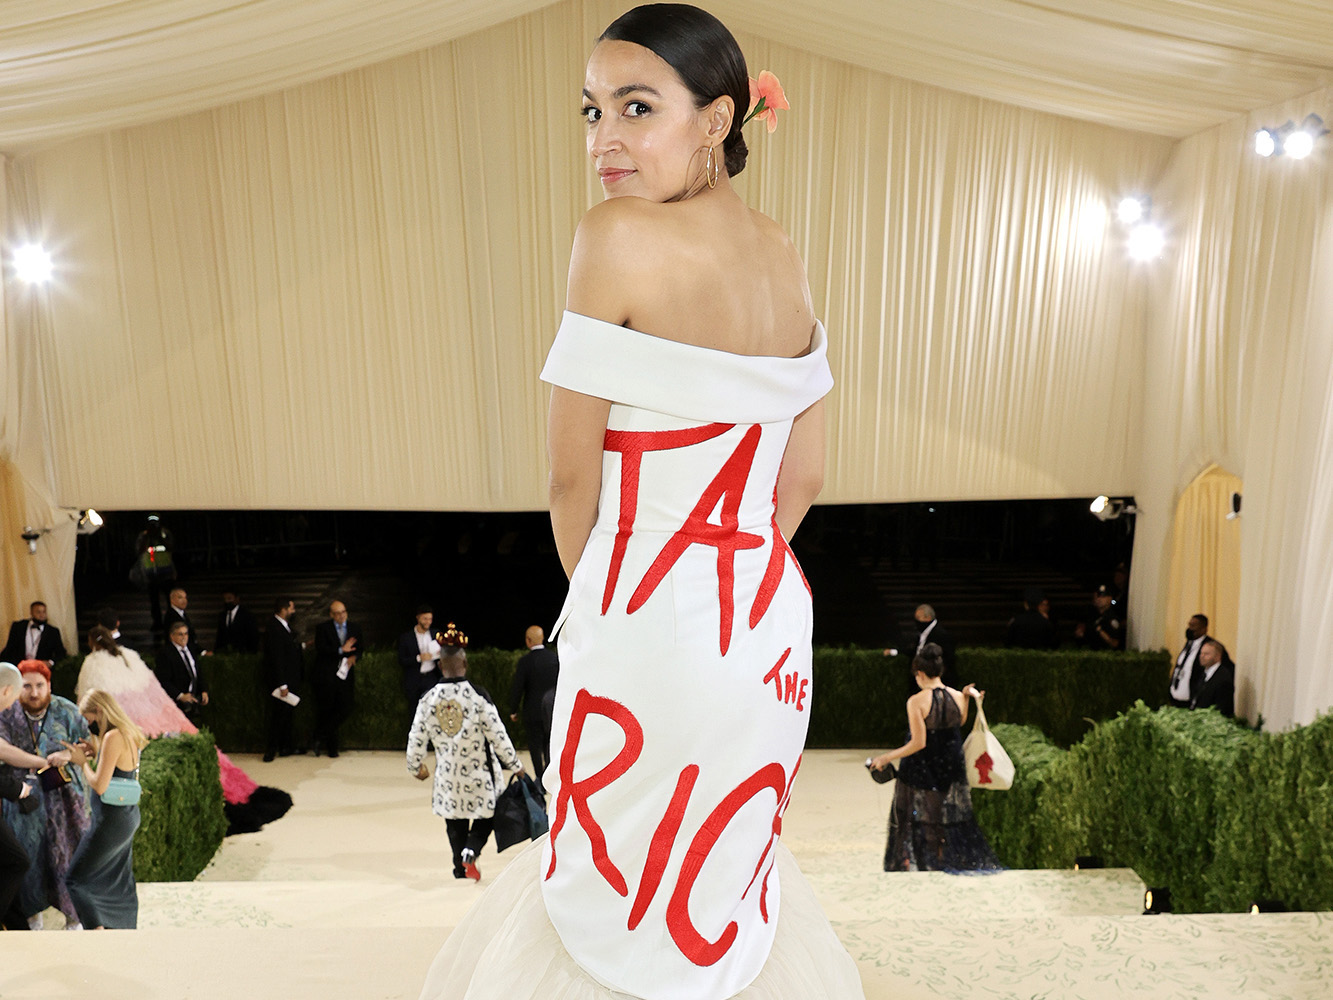 tax the rich dress